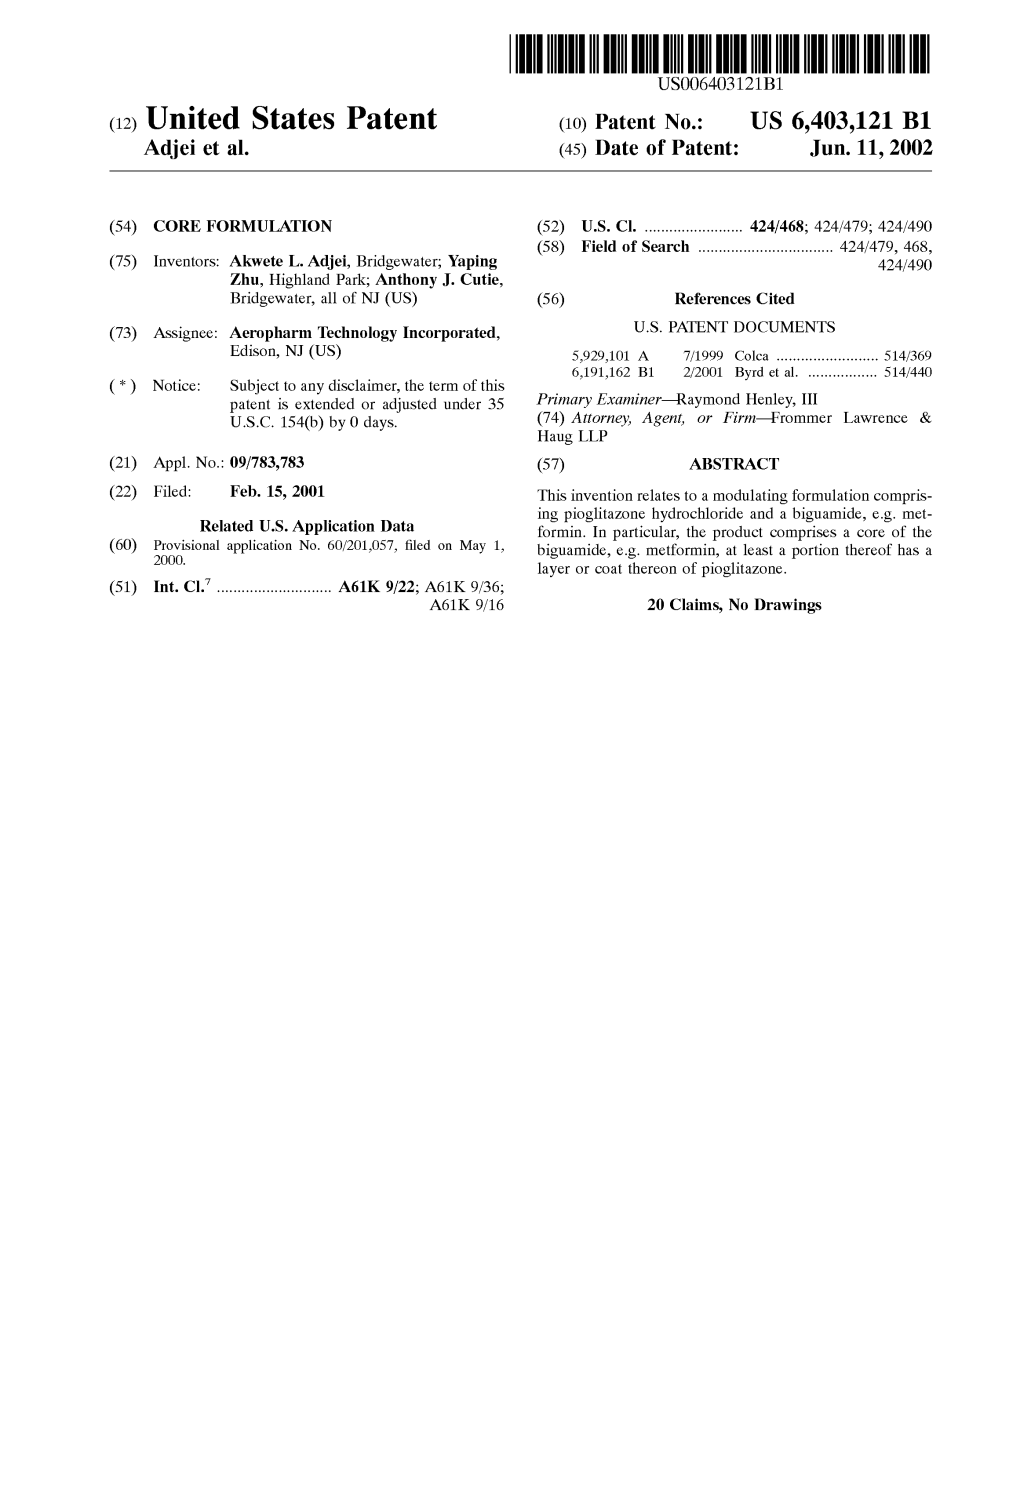 (12) United States Patent (10) Patent No.: US 6,403,121 B1 Adjei Et Al